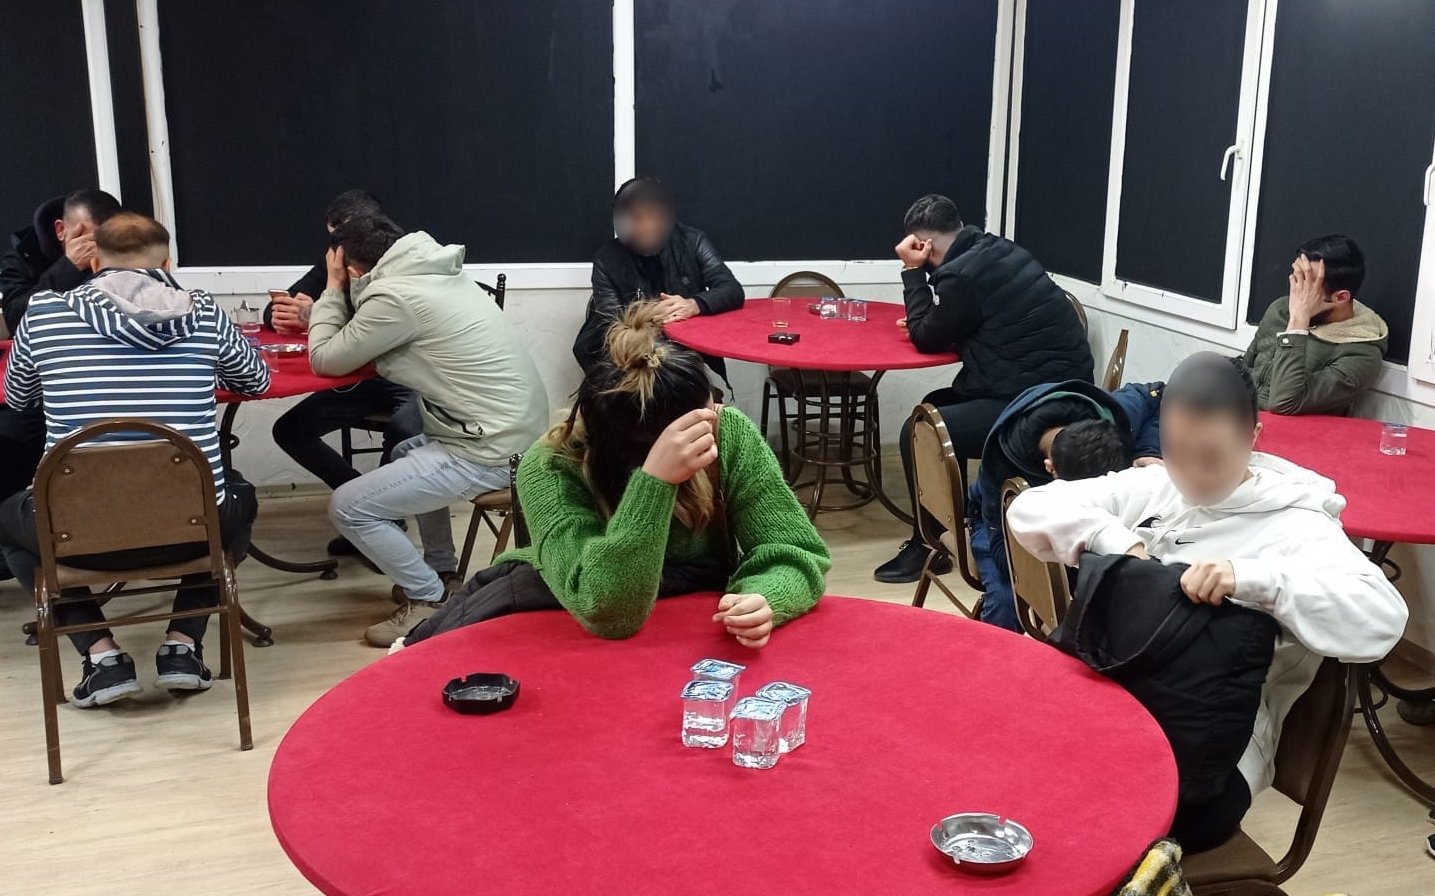 İzmir'de kumar operasyonu: 43 kişiye para cezası